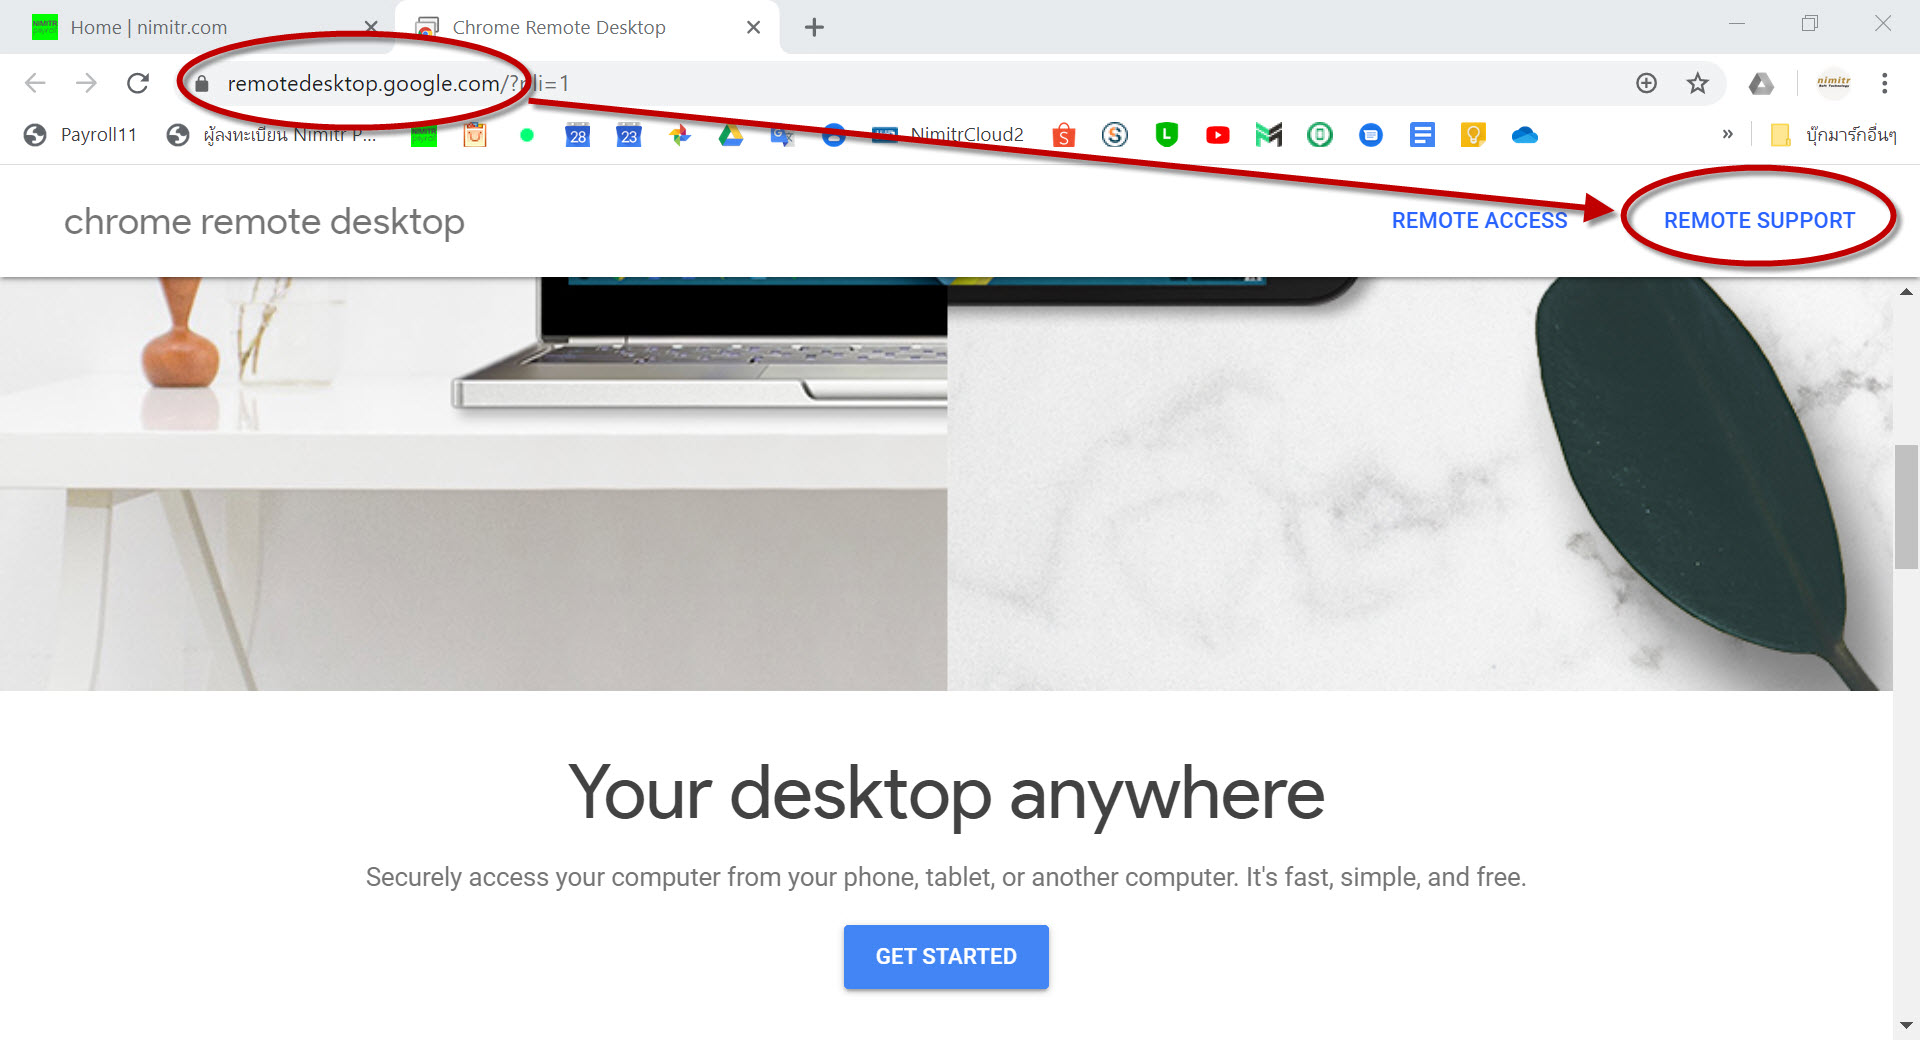 remotedesktop.google.com